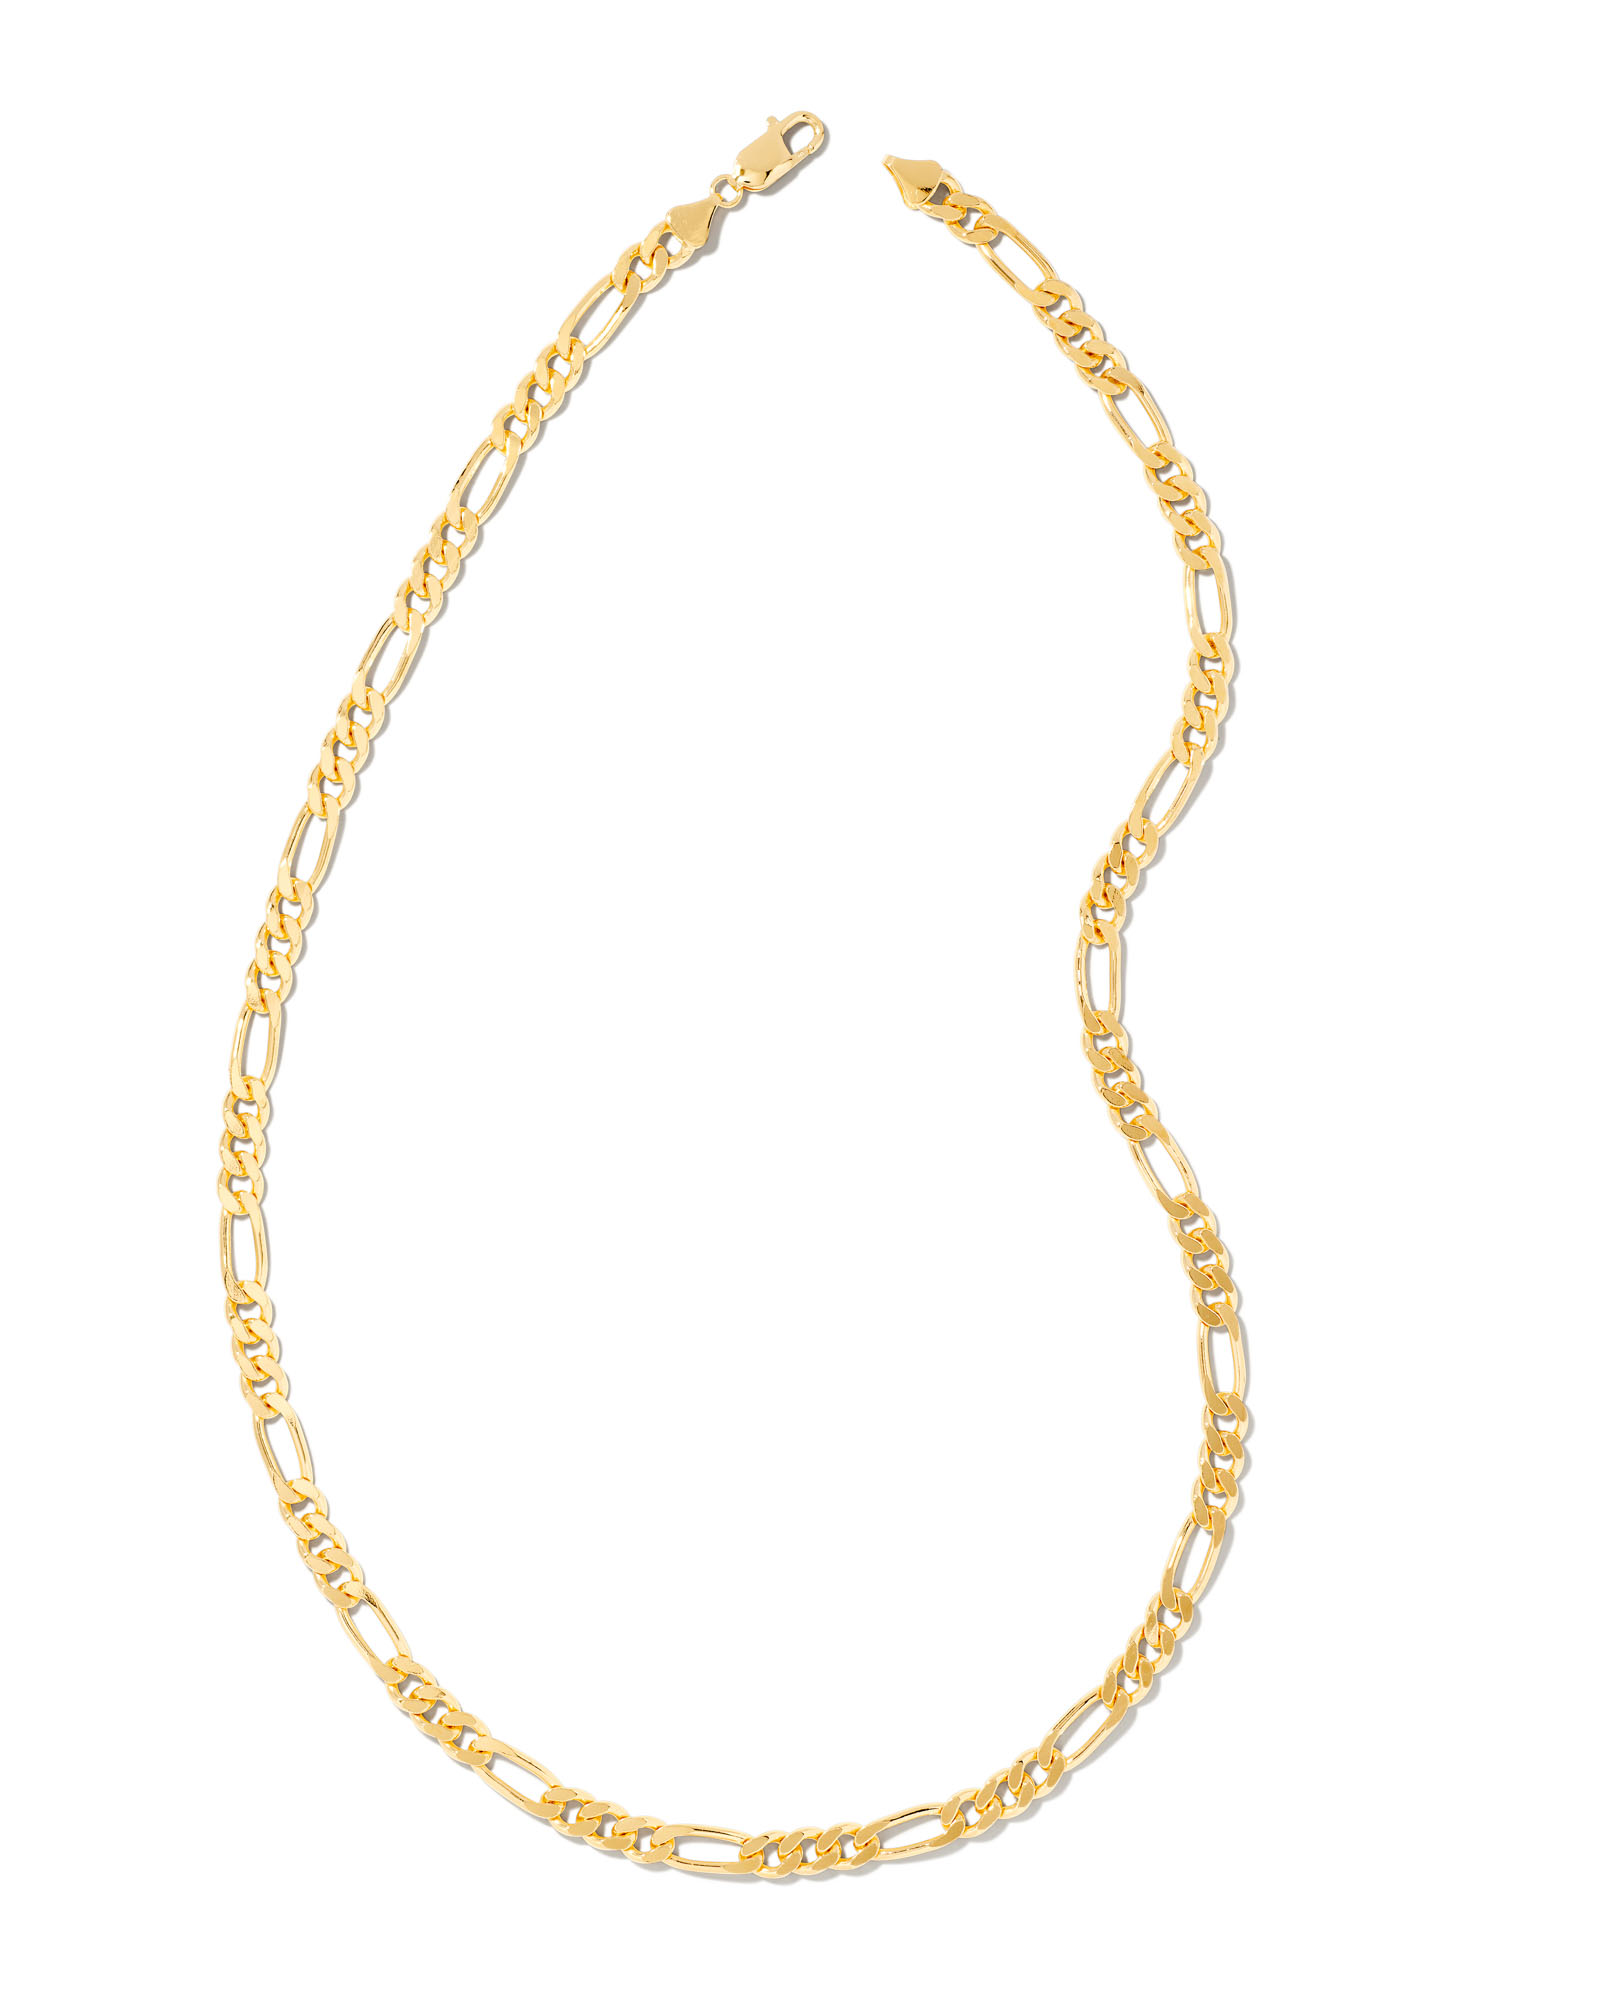 Link & Chain Charm Bracelet in 18K Gold Vermeil | Kendra Scott